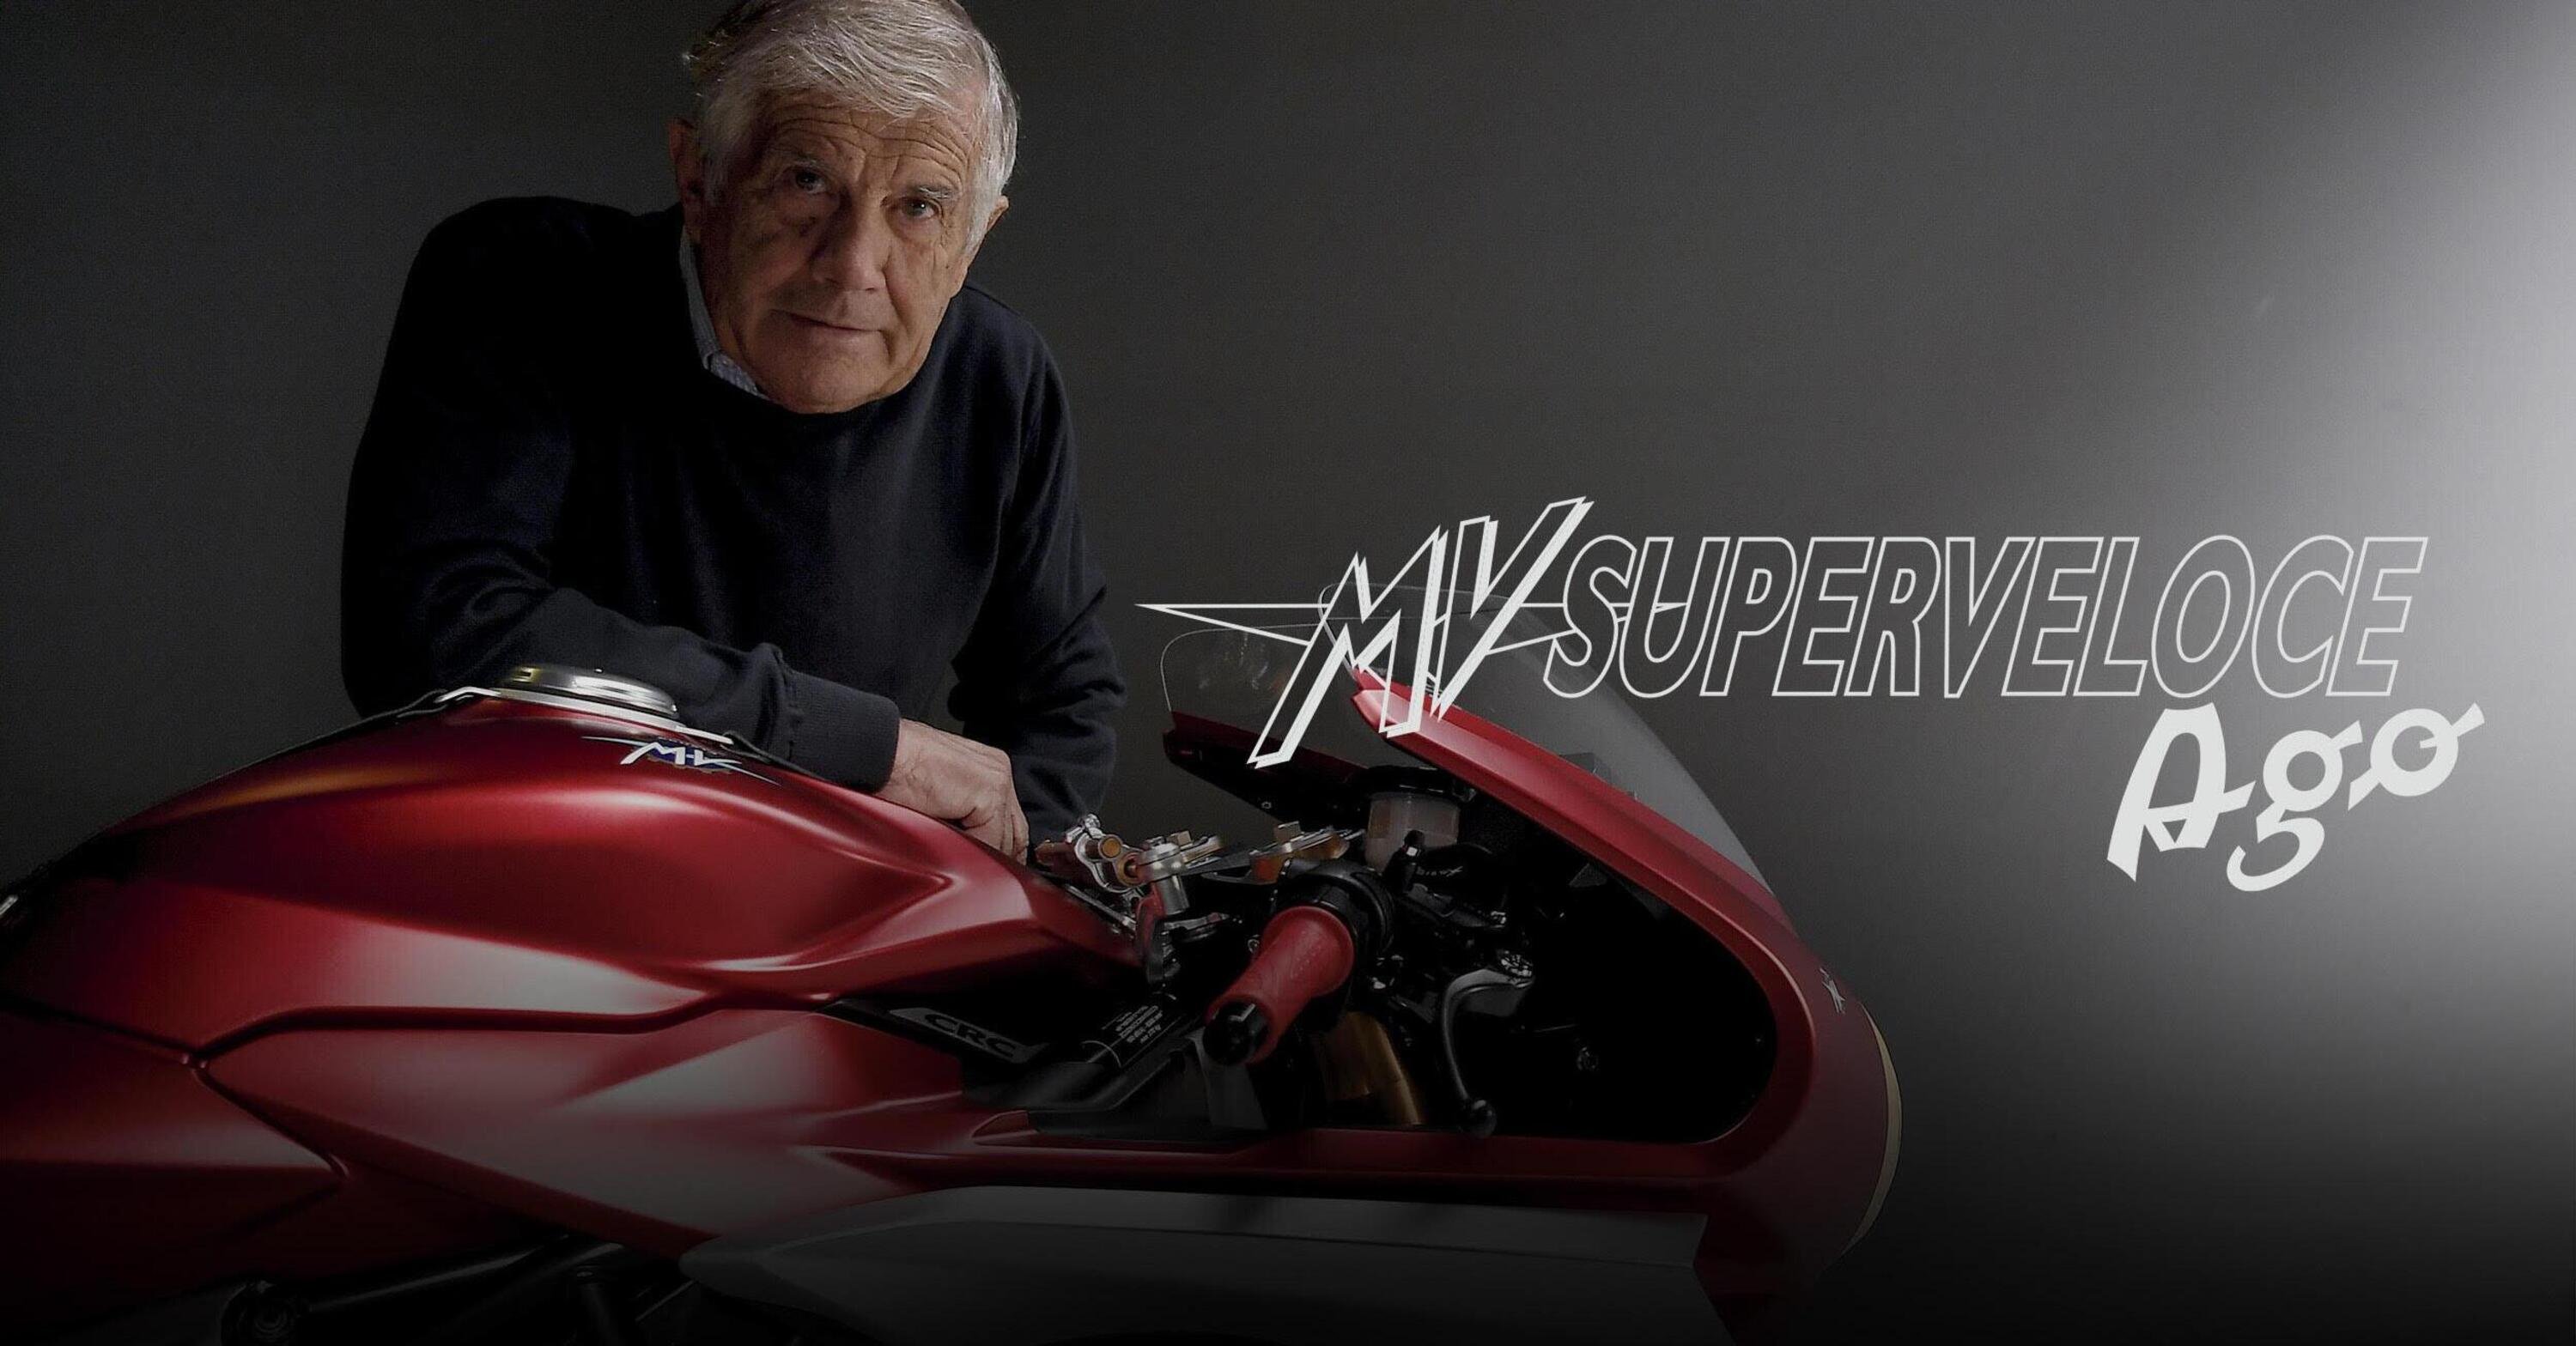 Agostini in pista a Misano con la MV Agusta Superveloce AGO